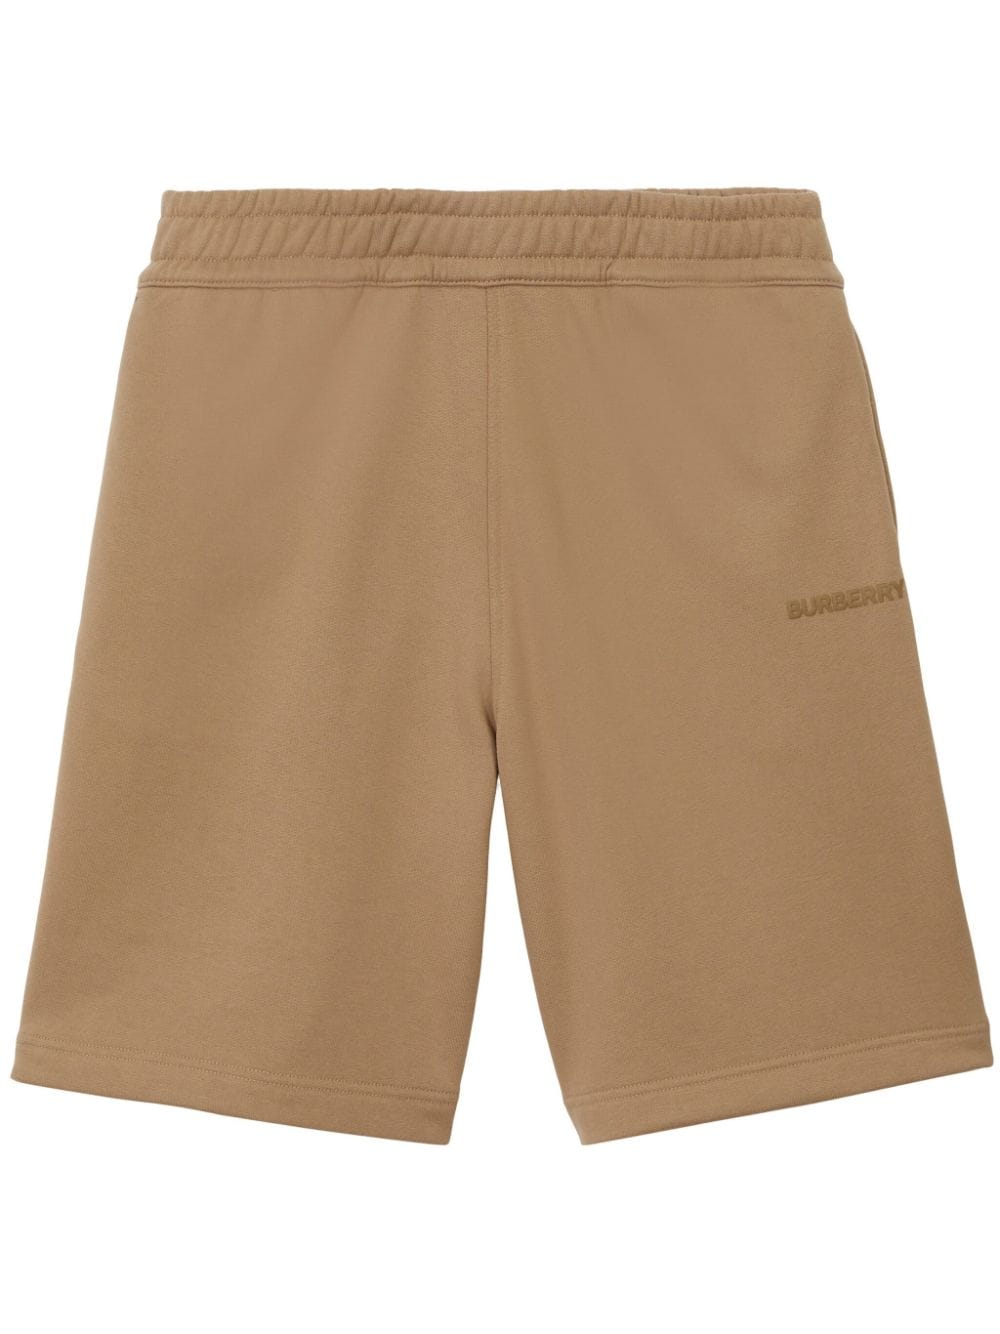 Burberry Shorts sportivi con applicazione - Marrone